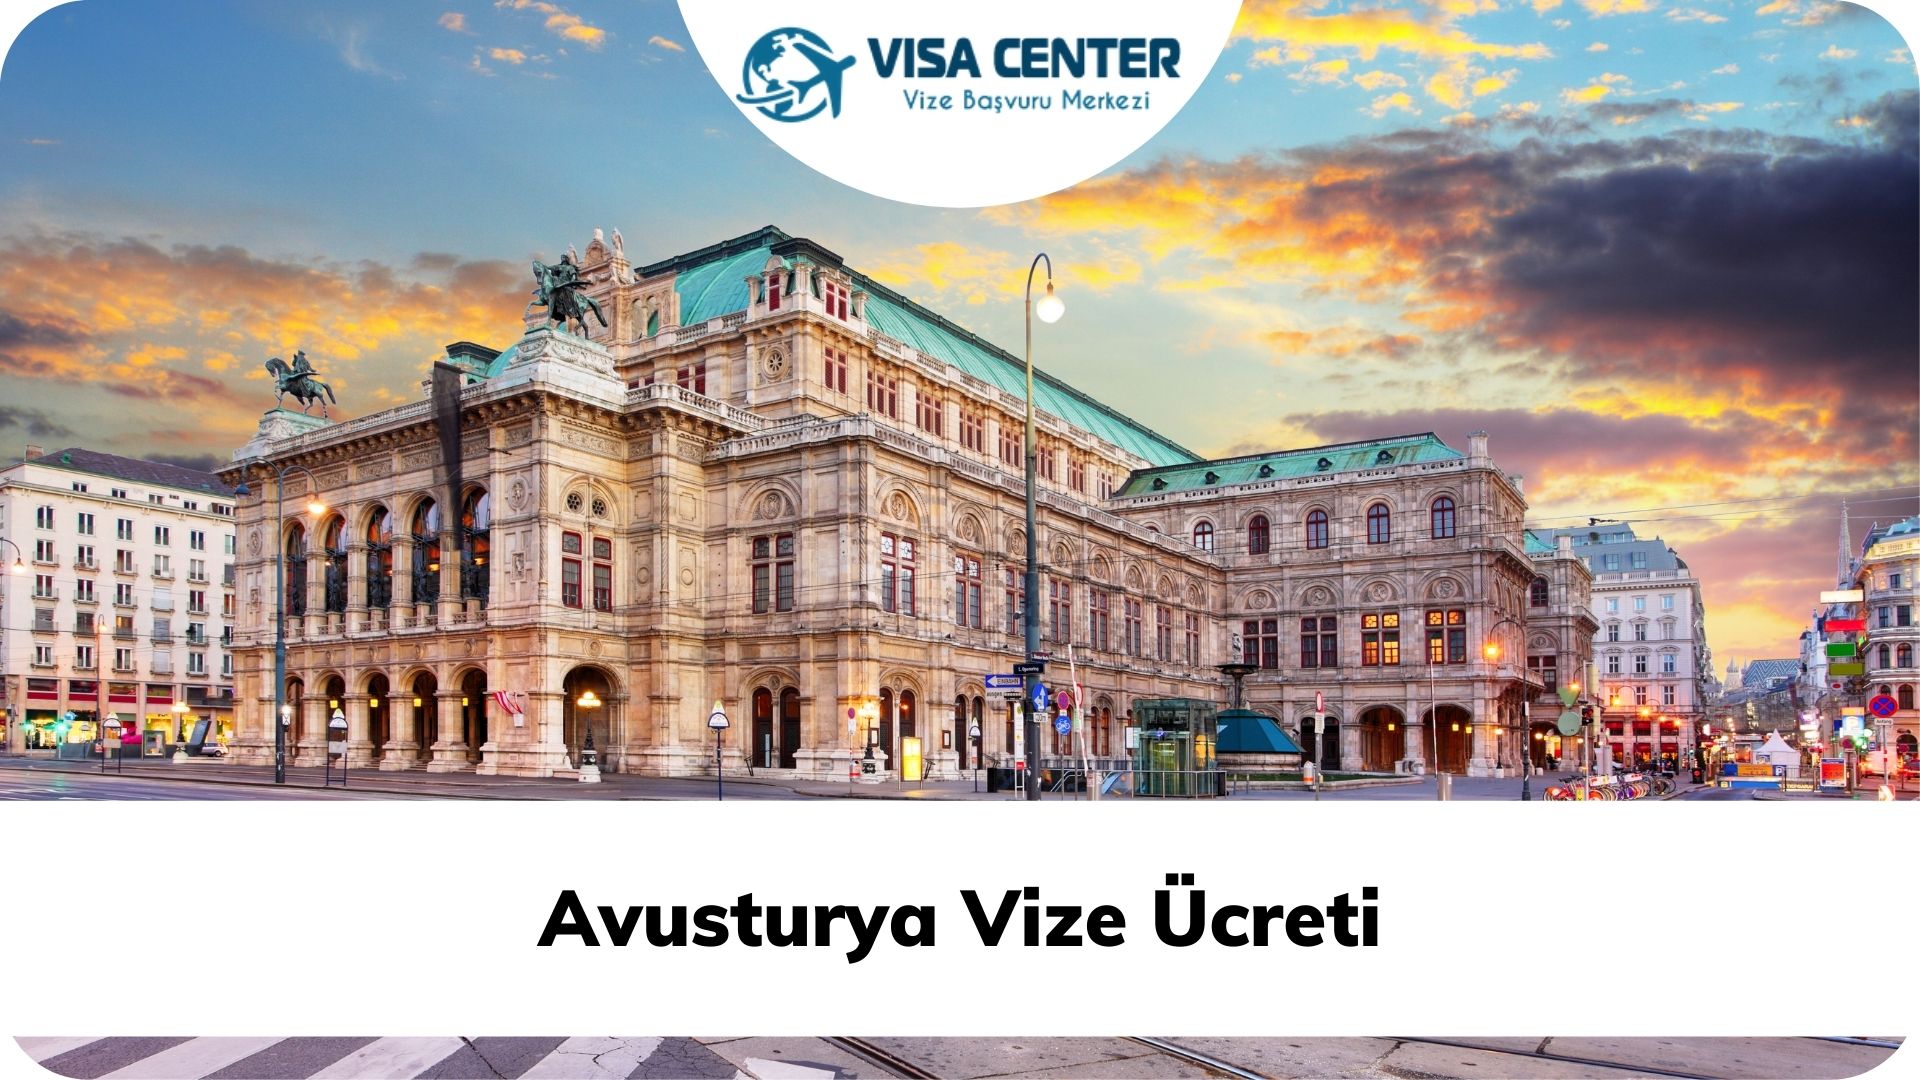 Avusturya Vize Ücreti